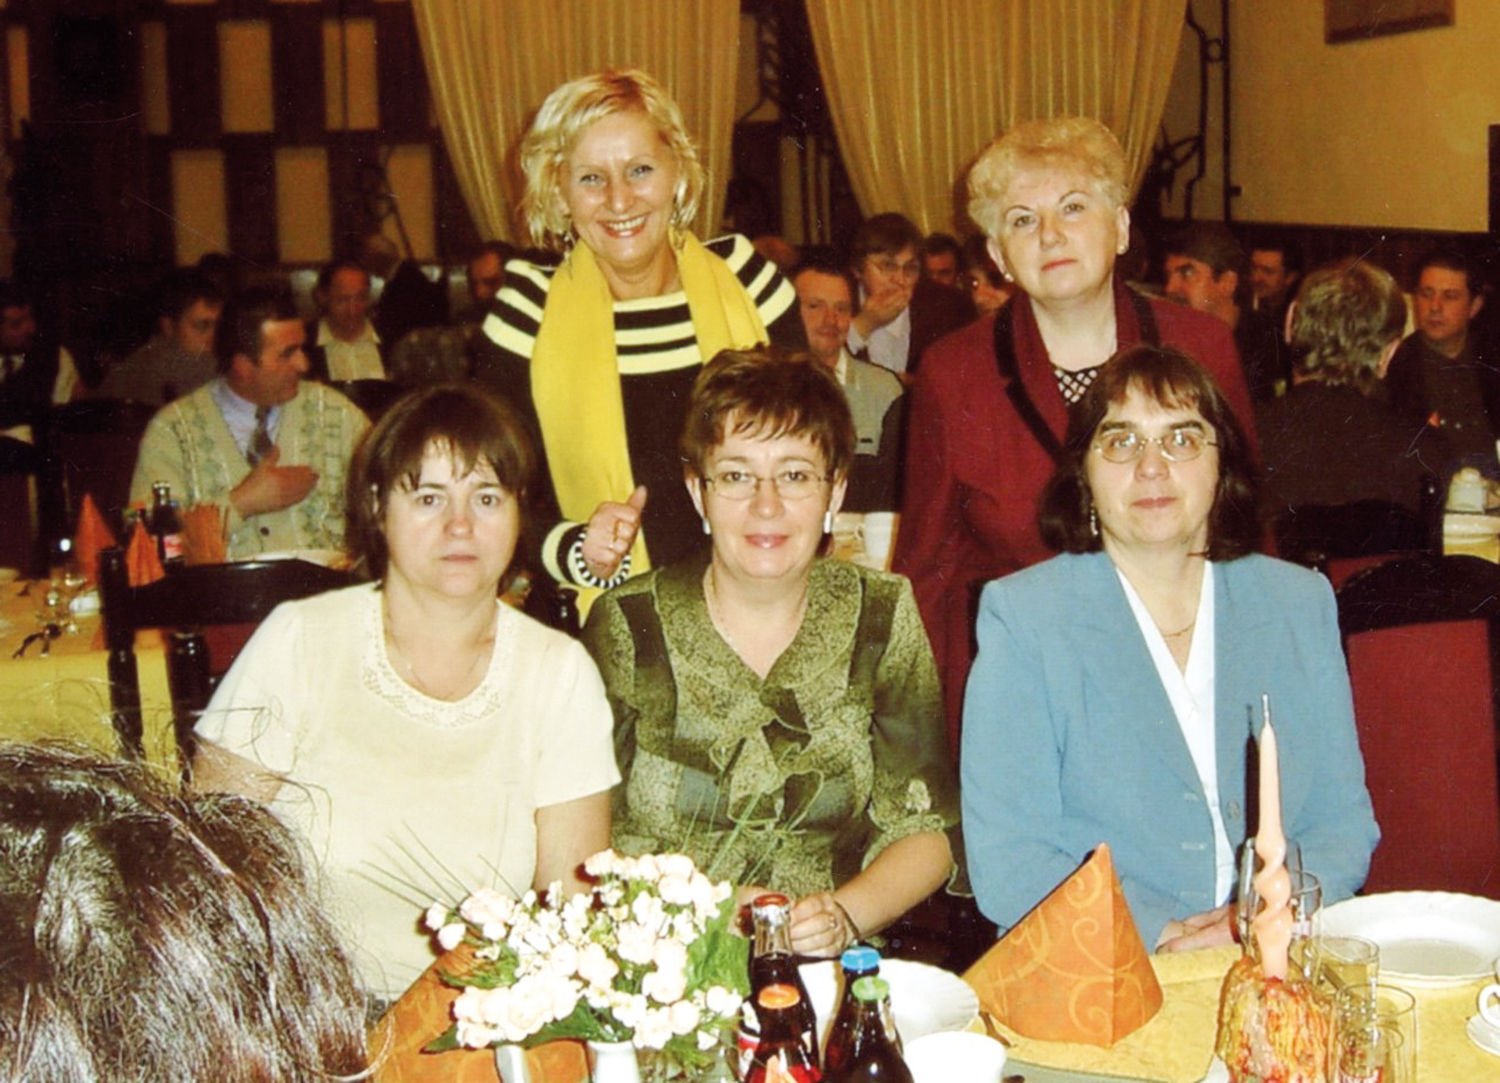 Od lewej stoją: Wiesława Kapelska i Marianna Kałdońska. Siedzą: Elżbieta Kuryłowicz, Maria Pikul i Maria Ostachowska.